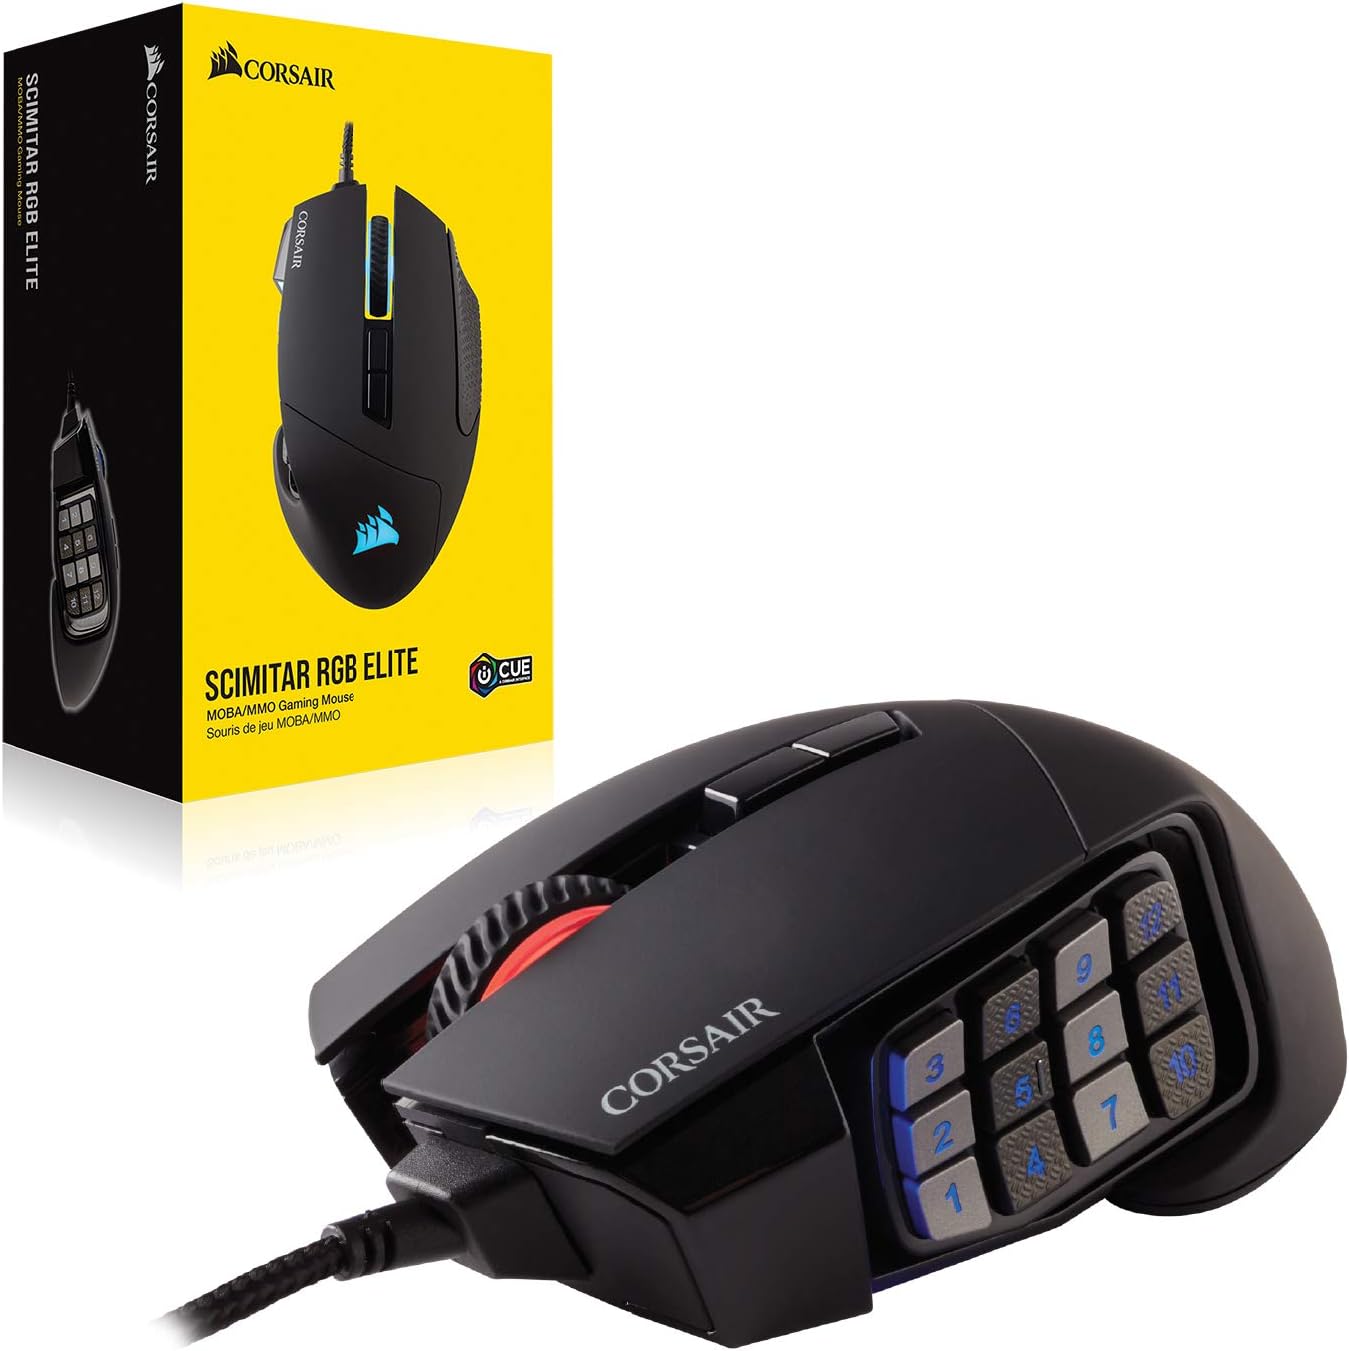 Corsair SCIMITAR RGB ELITE Gaming Mouse Review